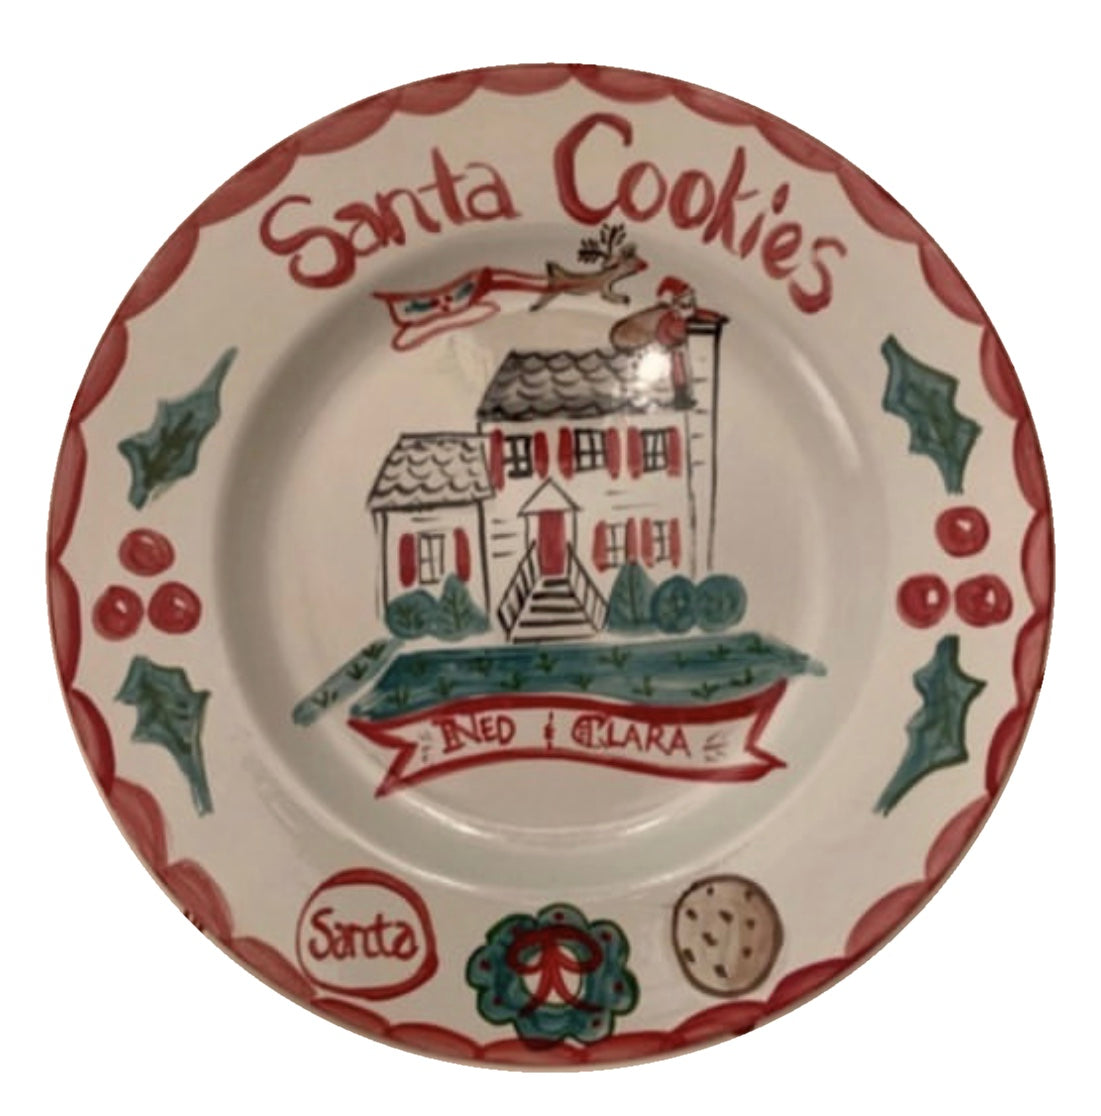 Santa Cookies Plate - Tricia Lowenfield Design